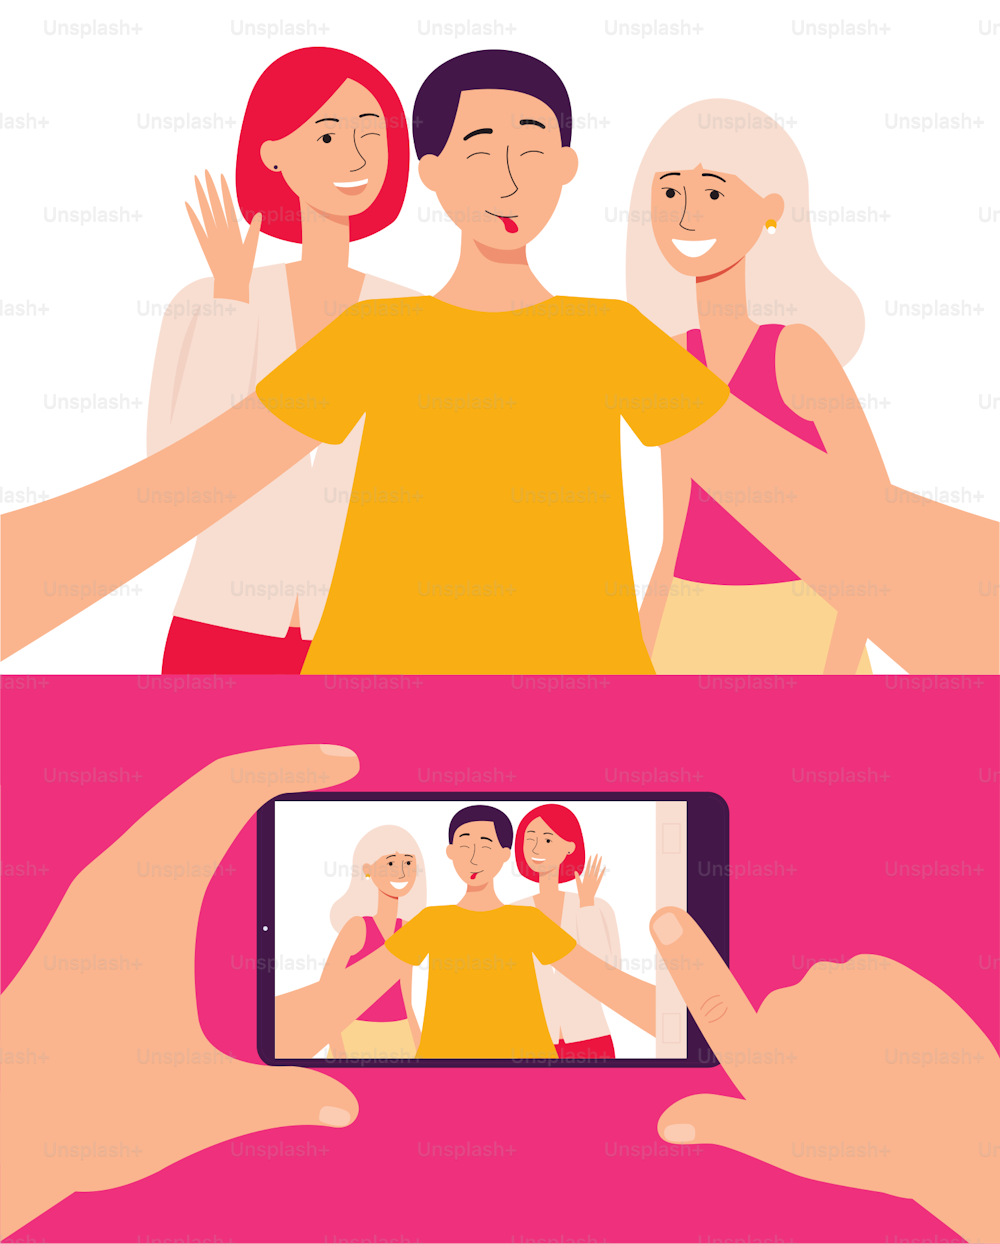 Smartphone-Bildschirm mit Foto von Freunden und einer Gruppe von Jugendlichen, die Selfies machen, die flache Vektorillustration. Kommunikation, mobile Technologie und modernes Lifestyle-Konzept.